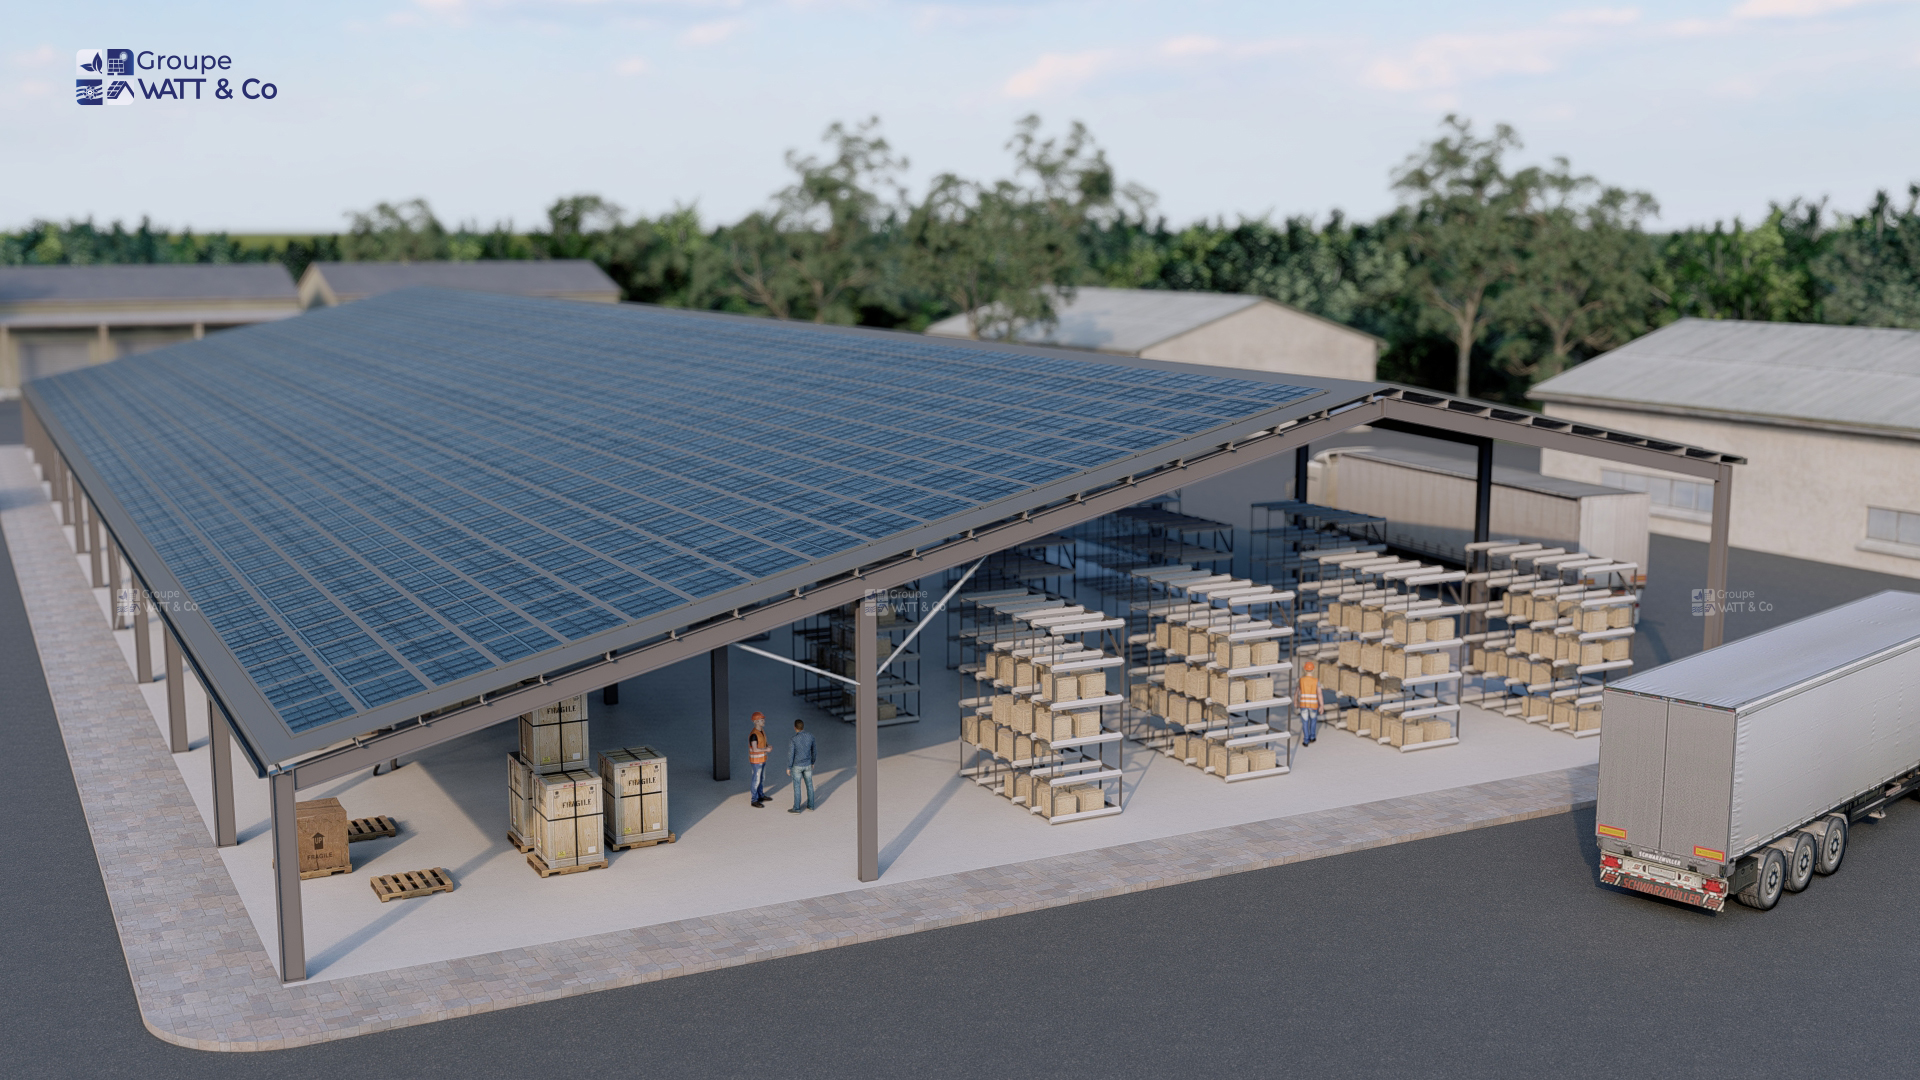 Bâtiment photovoltaïque financé industriel 2475 m2